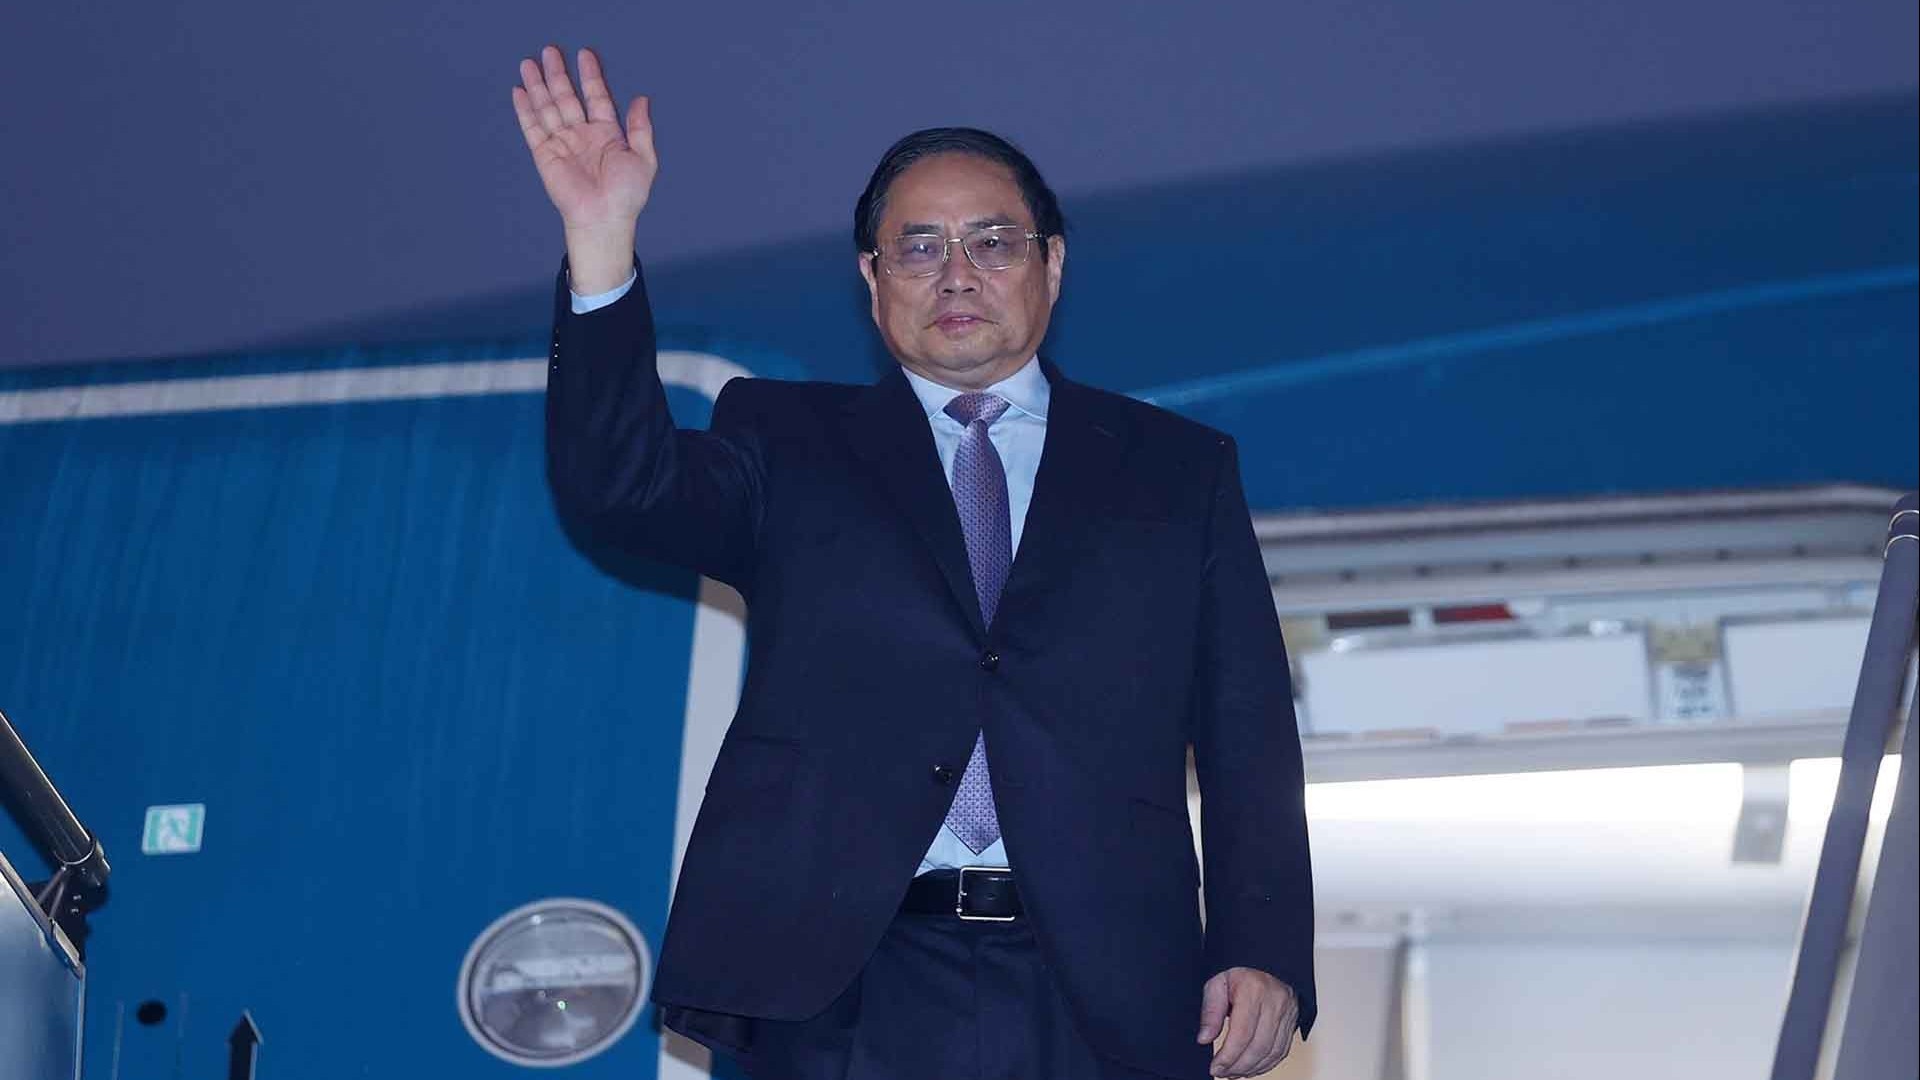 Thủ tướng Phạm Minh Chính lên đường thăm chính thức nước Cộng hòa Dân chủ Nhân dân Lào